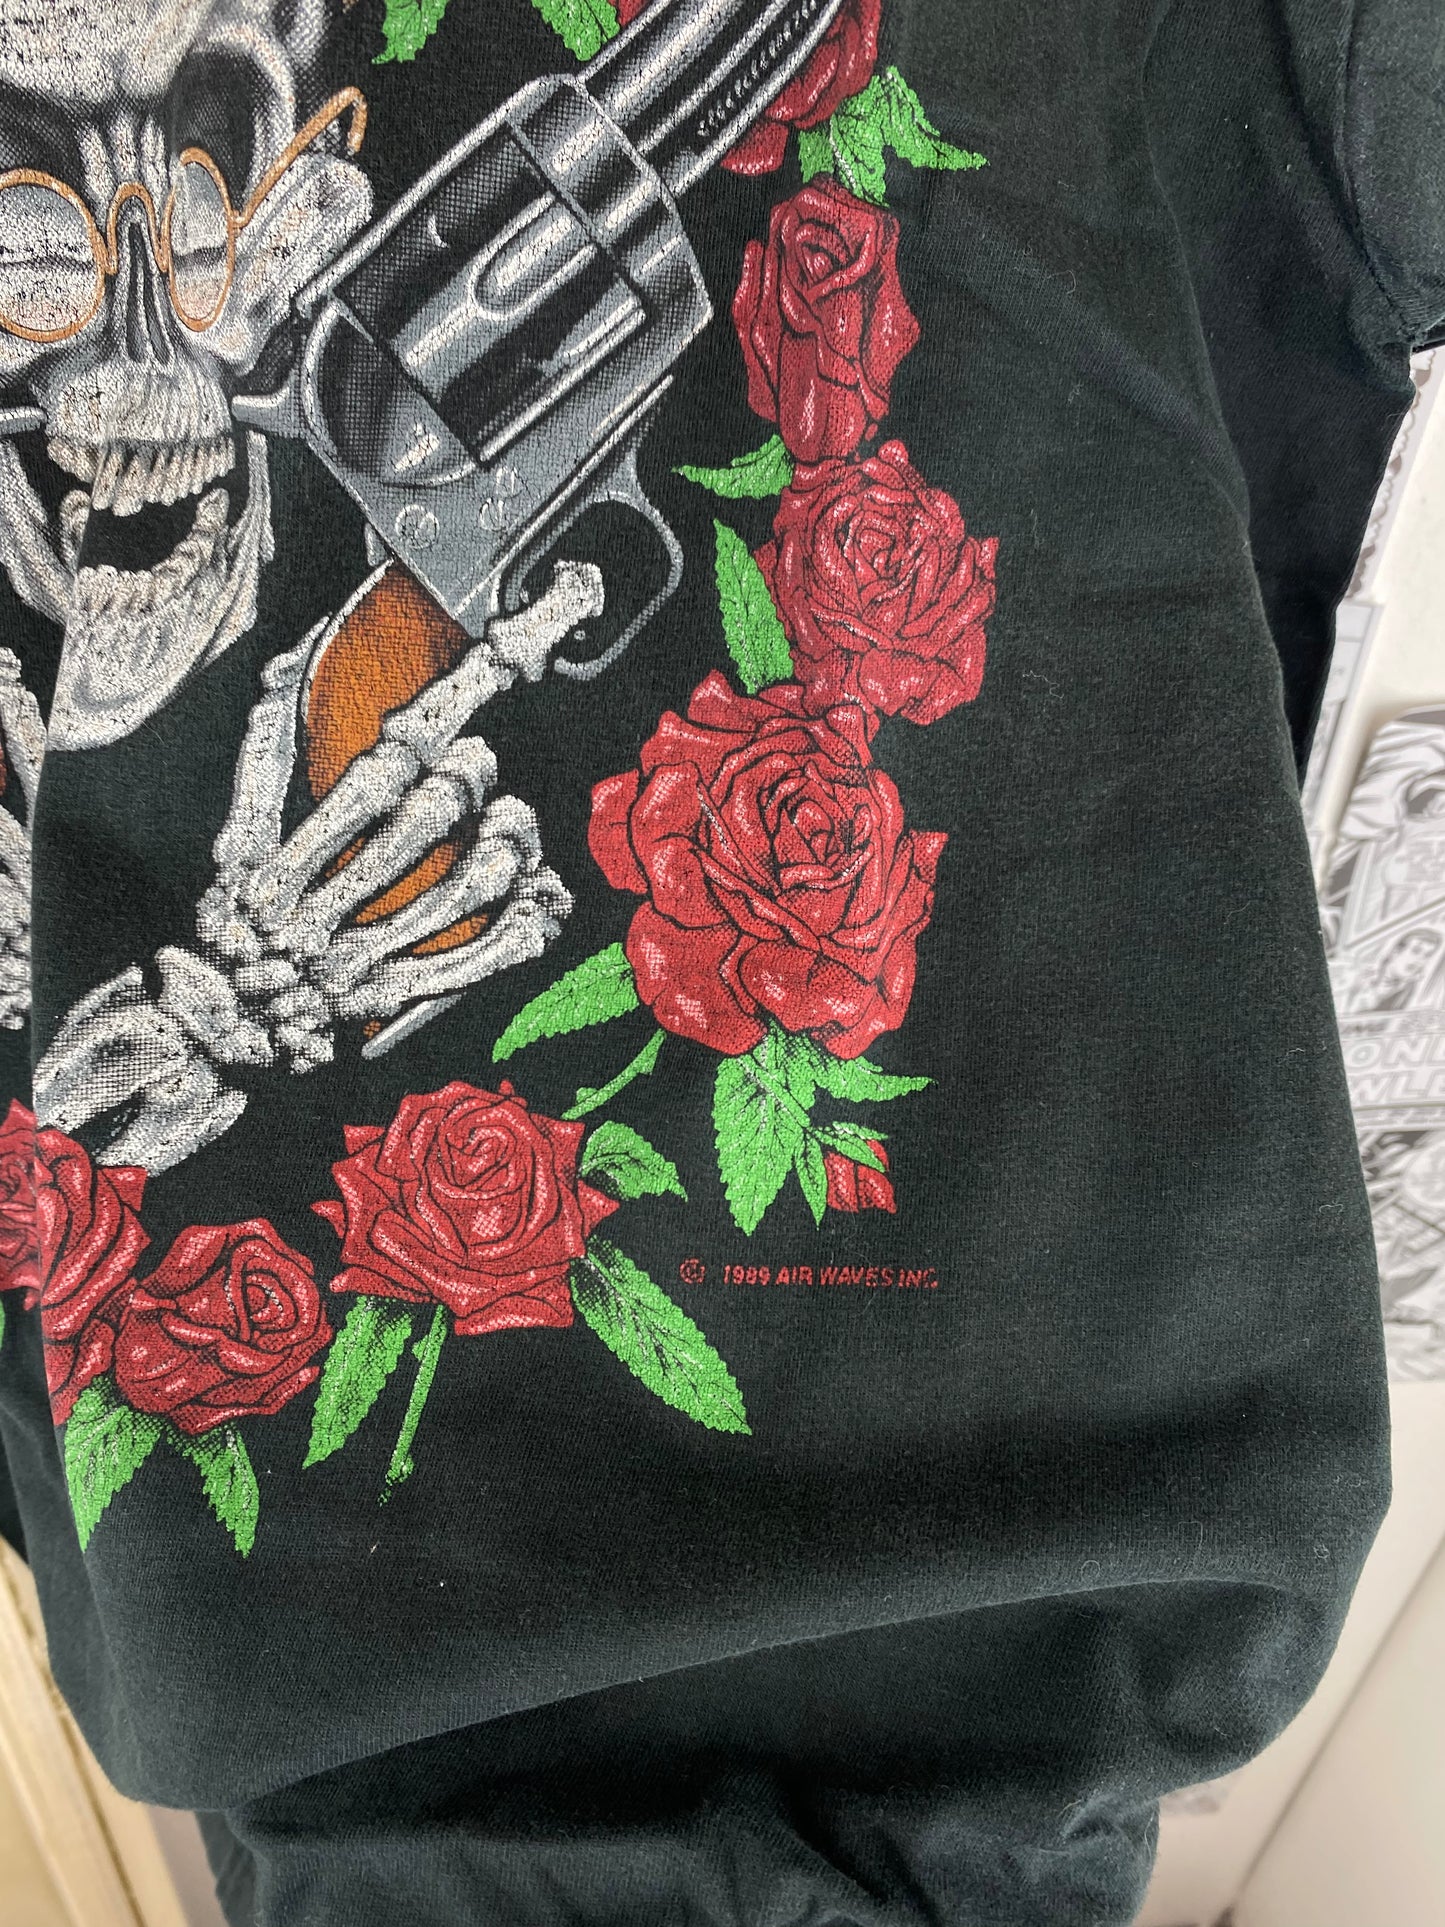 Vintage Guns N’ Roses - 90s t-shirt